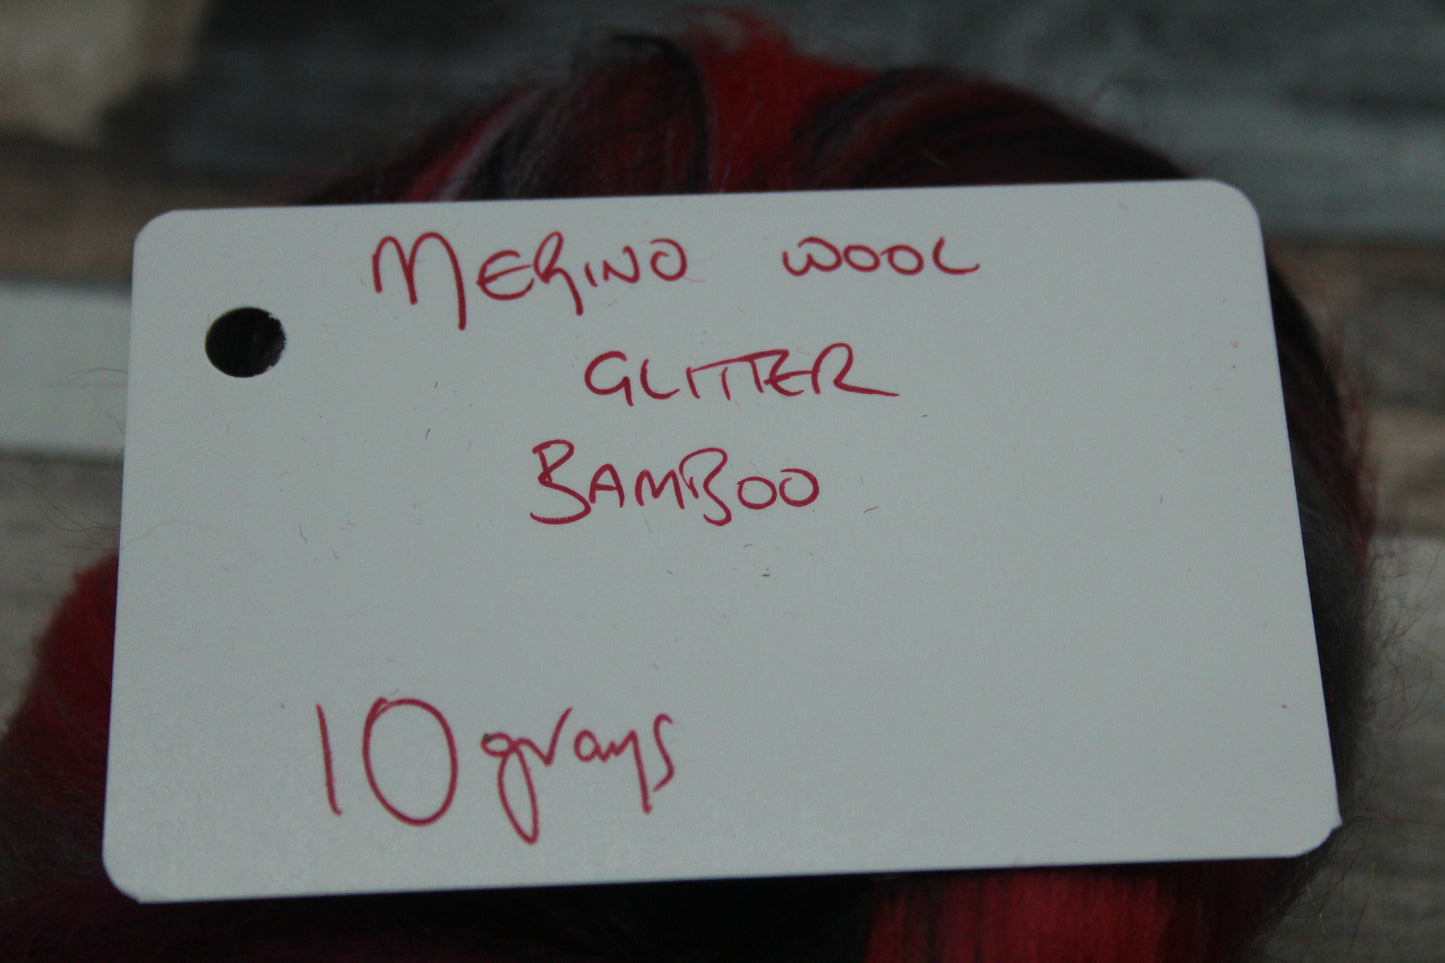 Merino Wool Blend - Red Grey Black - 10 grams / 0.3 oz  - Fibre for felting, weaving or spinning